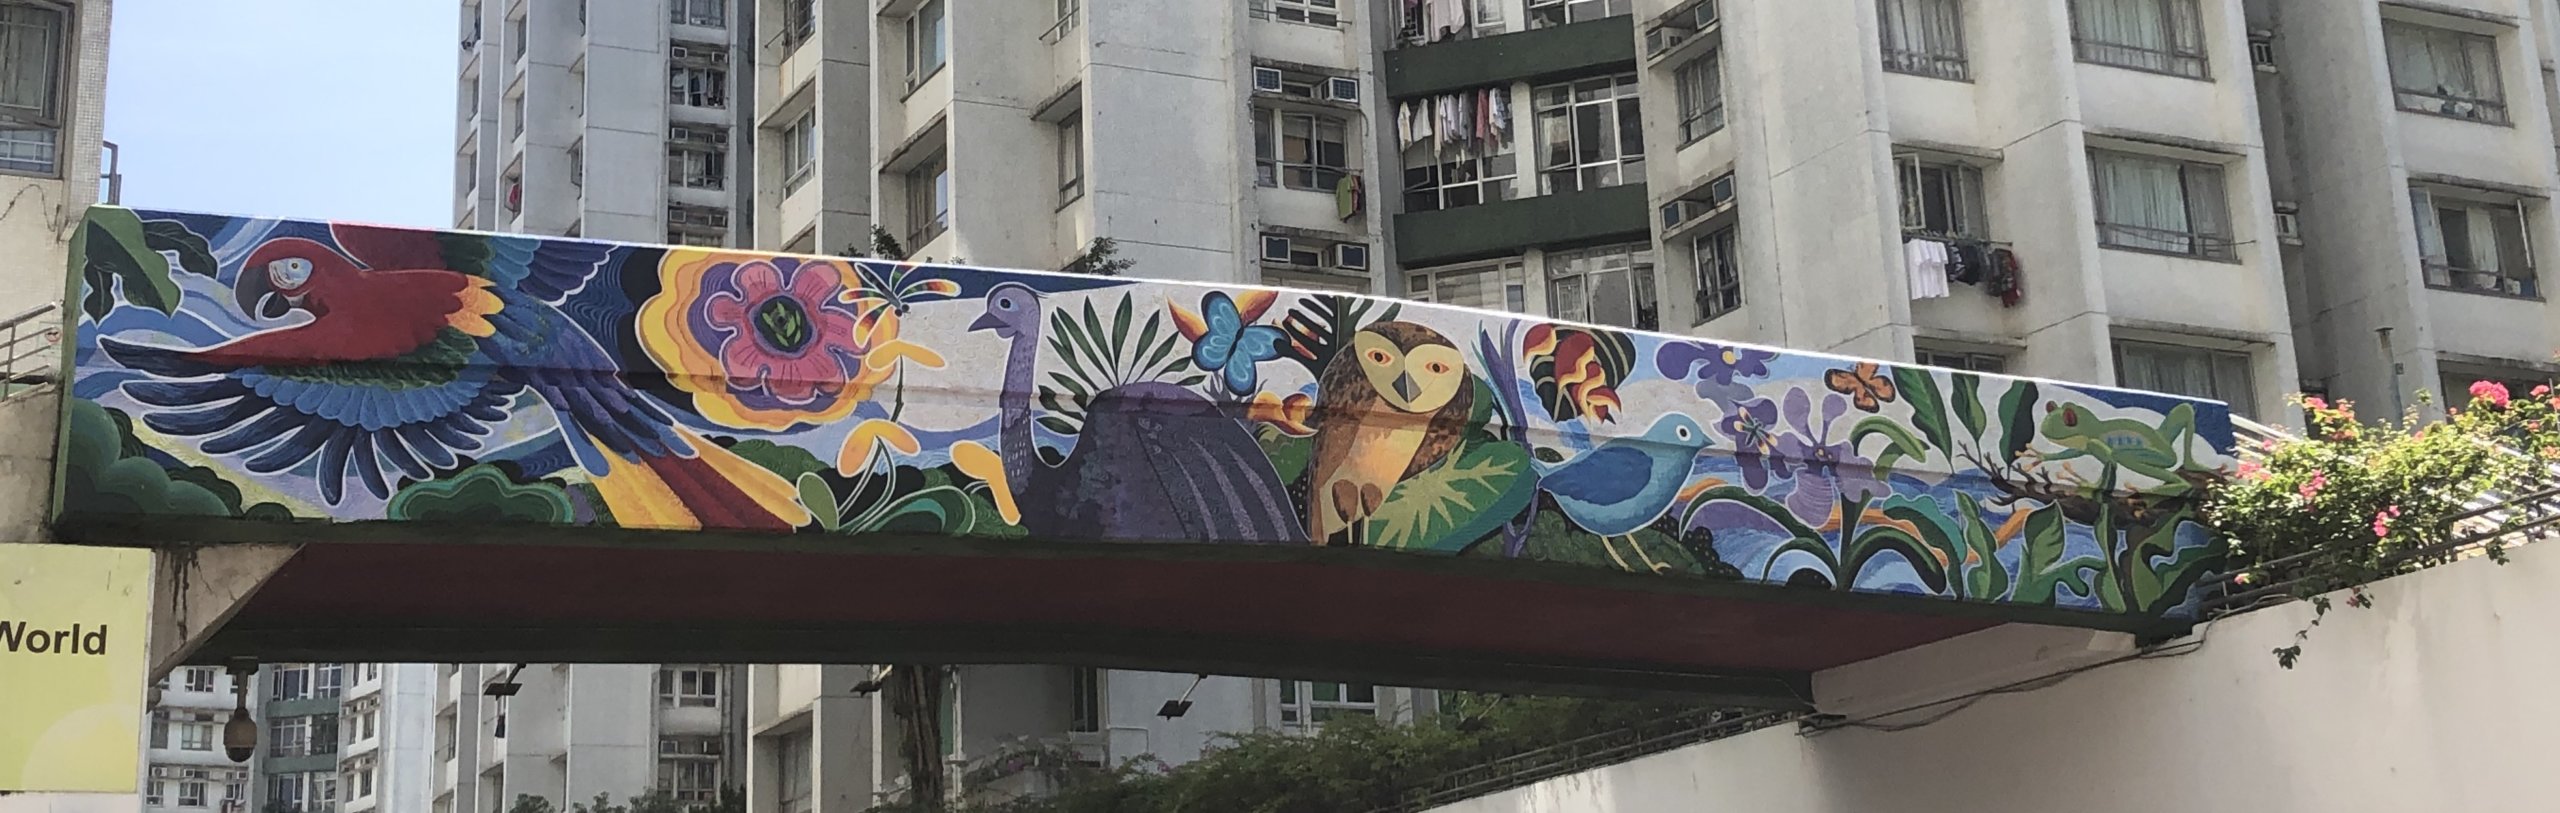 享膳坊對出的行人天橋位置，有由本地壁畫藝術家陳英發創作的森林插畫。